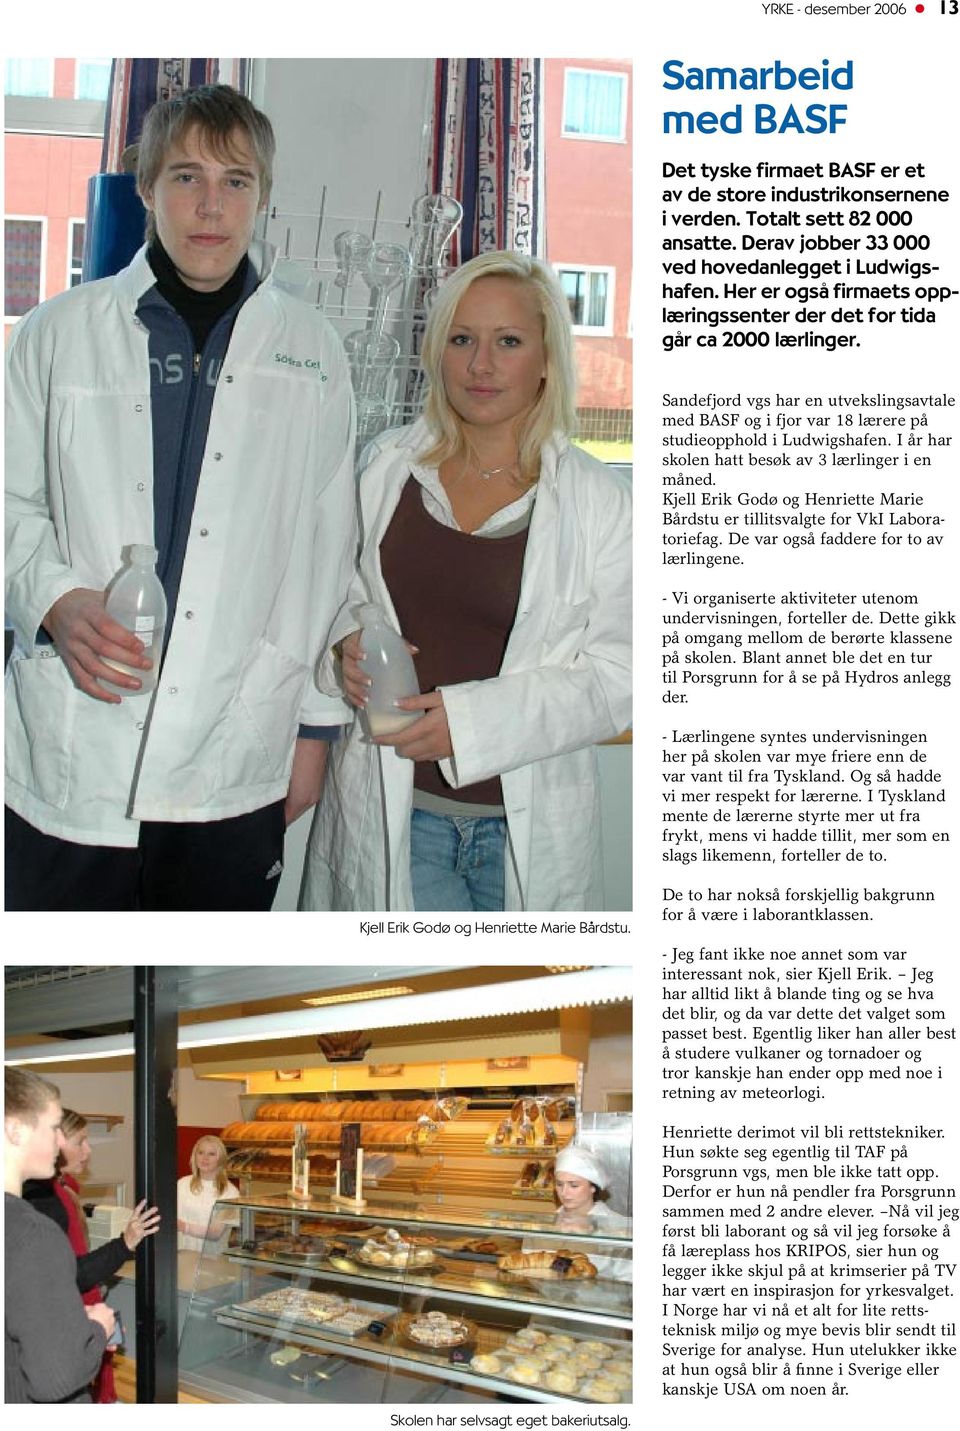 I år har skolen hatt besøk av 3 lærlinger i en måned. Kjell Erik Godø og Henriette Marie Bårdstu er tillitsvalgte for VkI Laboratoriefag. De var også faddere for to av lærlingene.